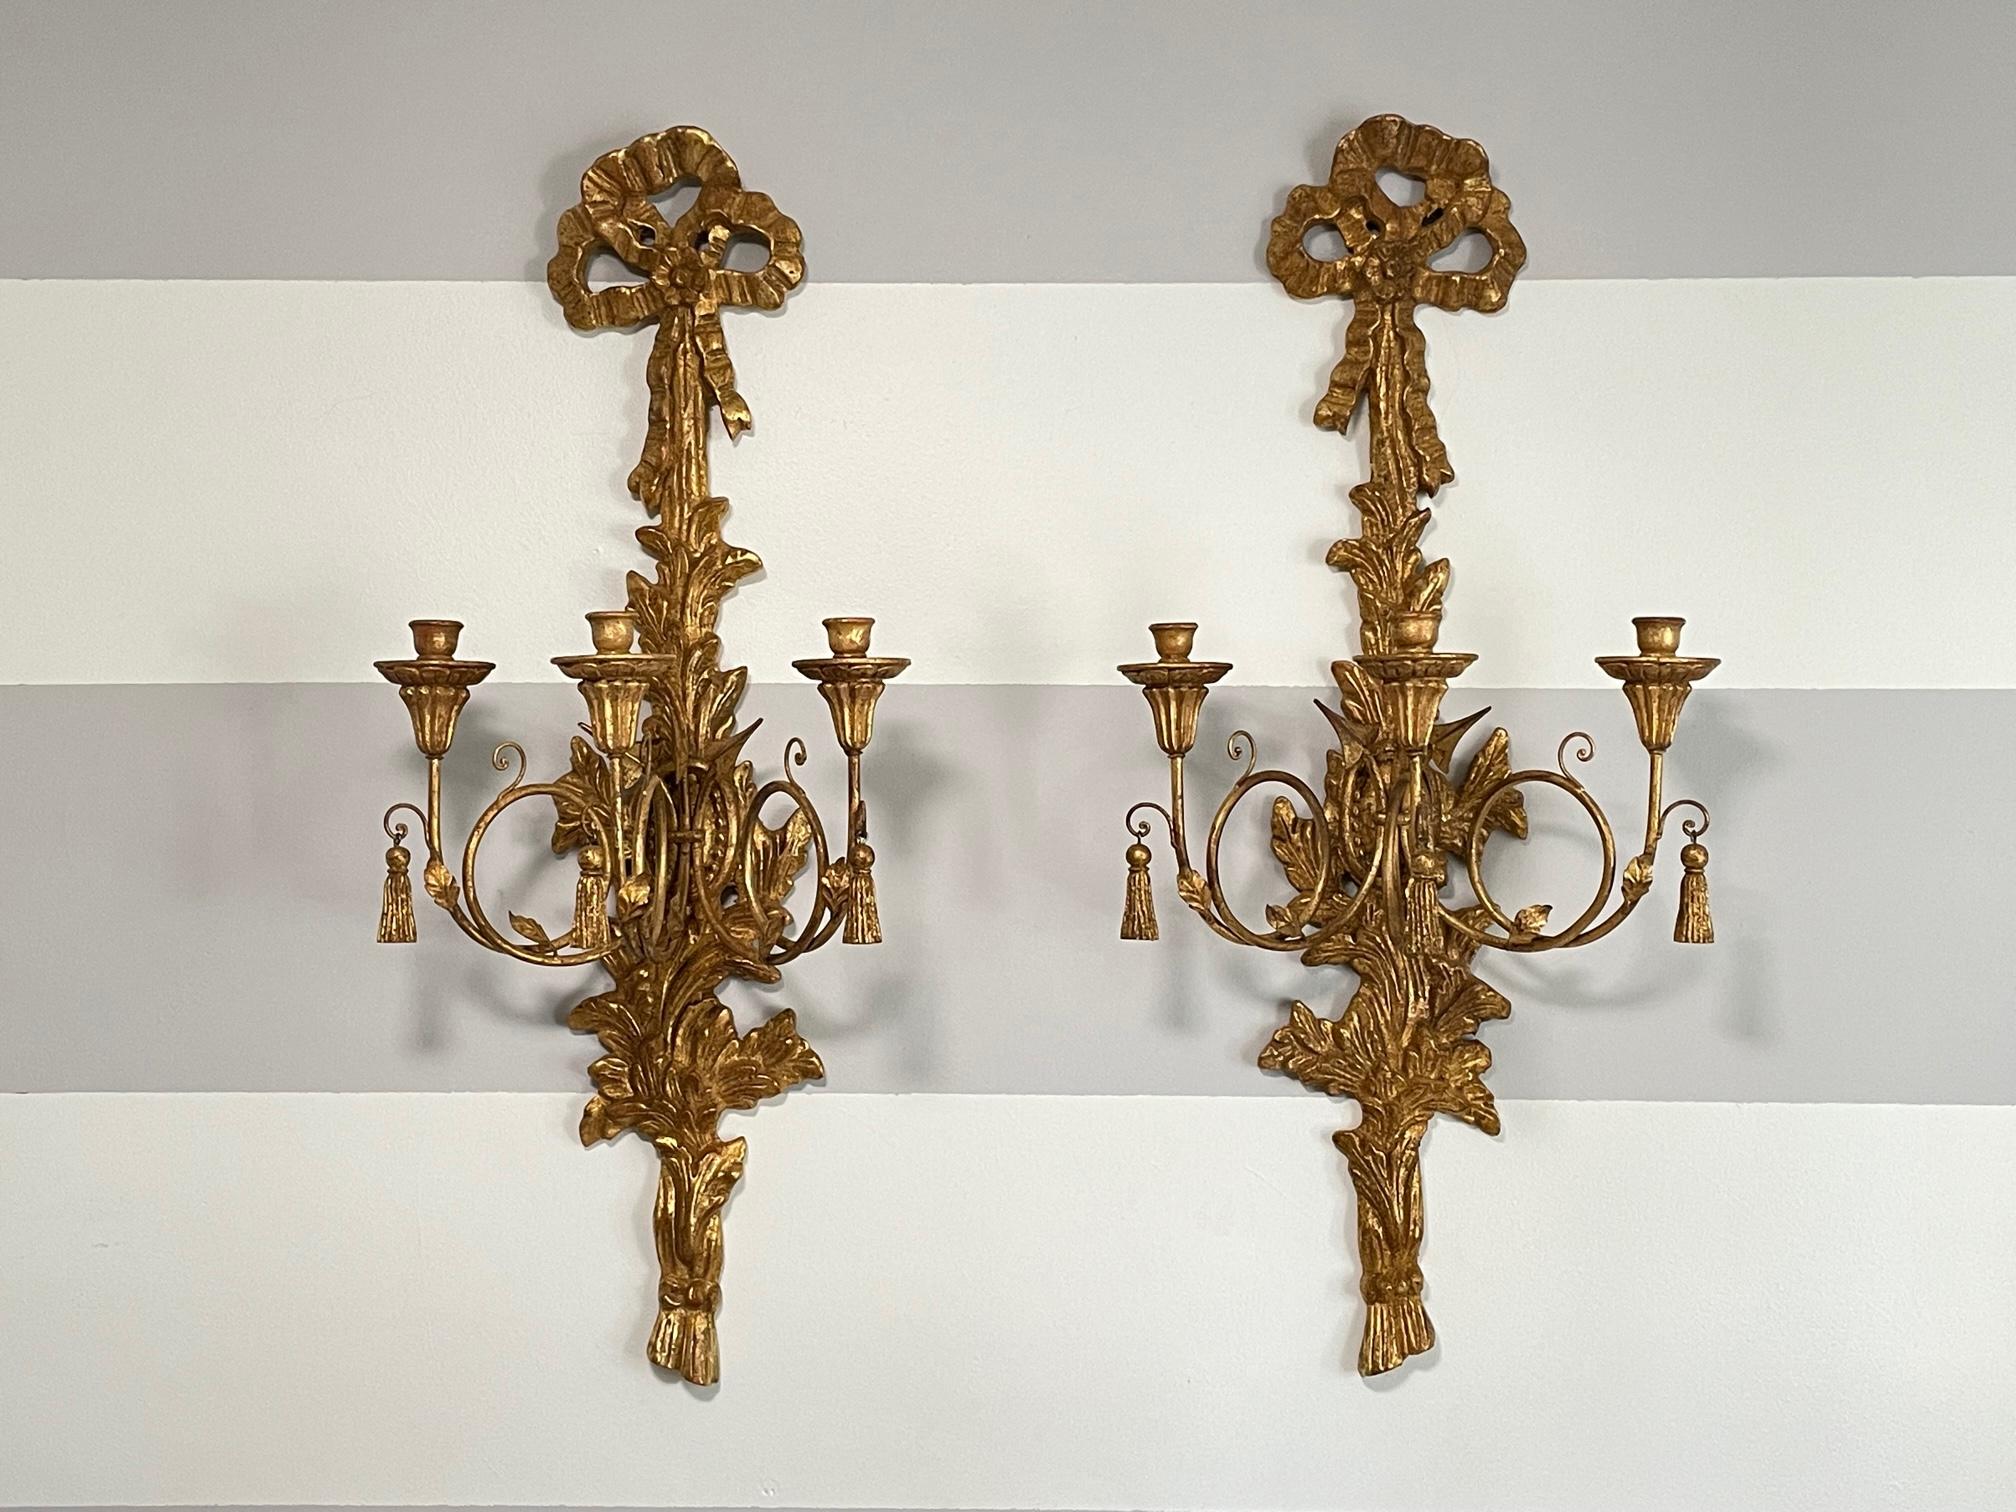 Ein Paar italienischer Kerzenleuchter aus Vergoldung mit 3 Armen und einem geschnitzten Motiv aus Akanthusblättern, Pfeilen und Bögen. Gekennzeichnet mit 